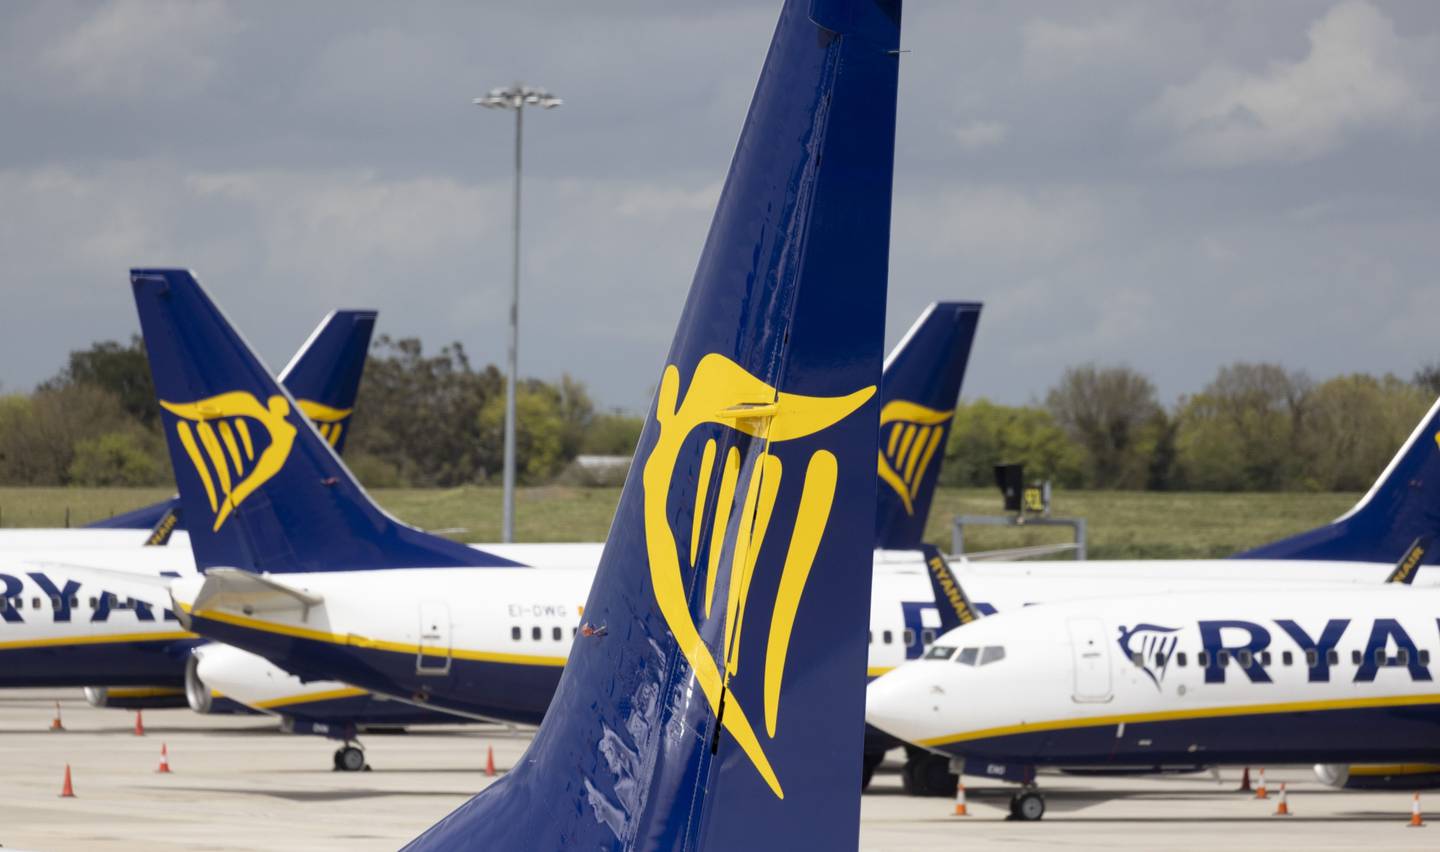 A irlandesa Ryanair é considerada a companhia aérea pioneira no segmento de transporte low cost no mundo